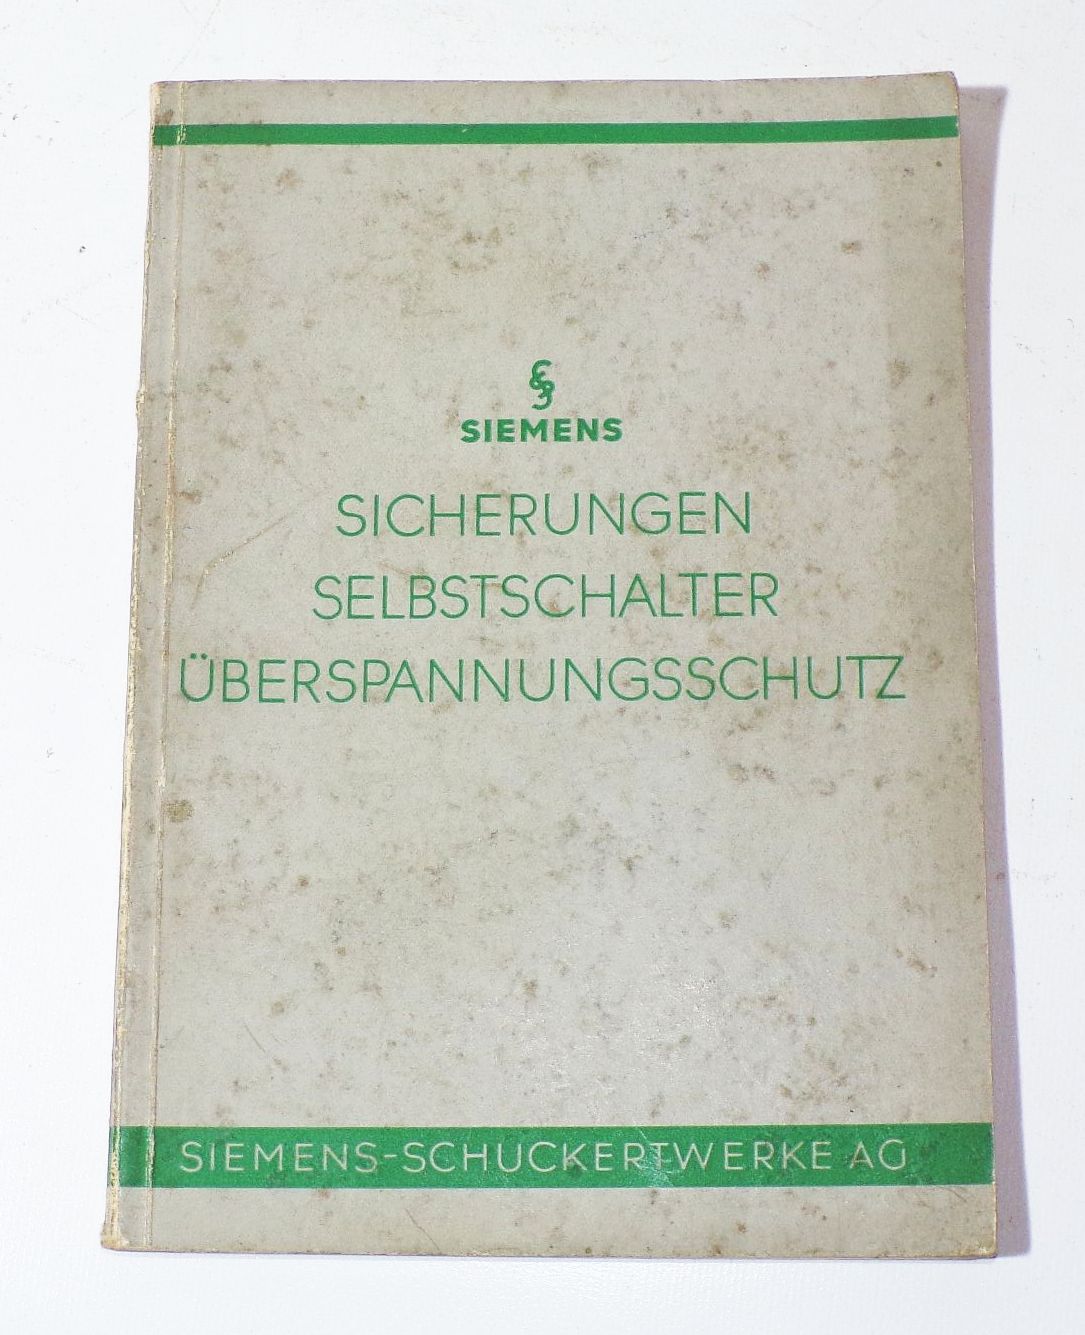 Siemens Sicherungen Selbstschalter Überspannungsschutz 1936 